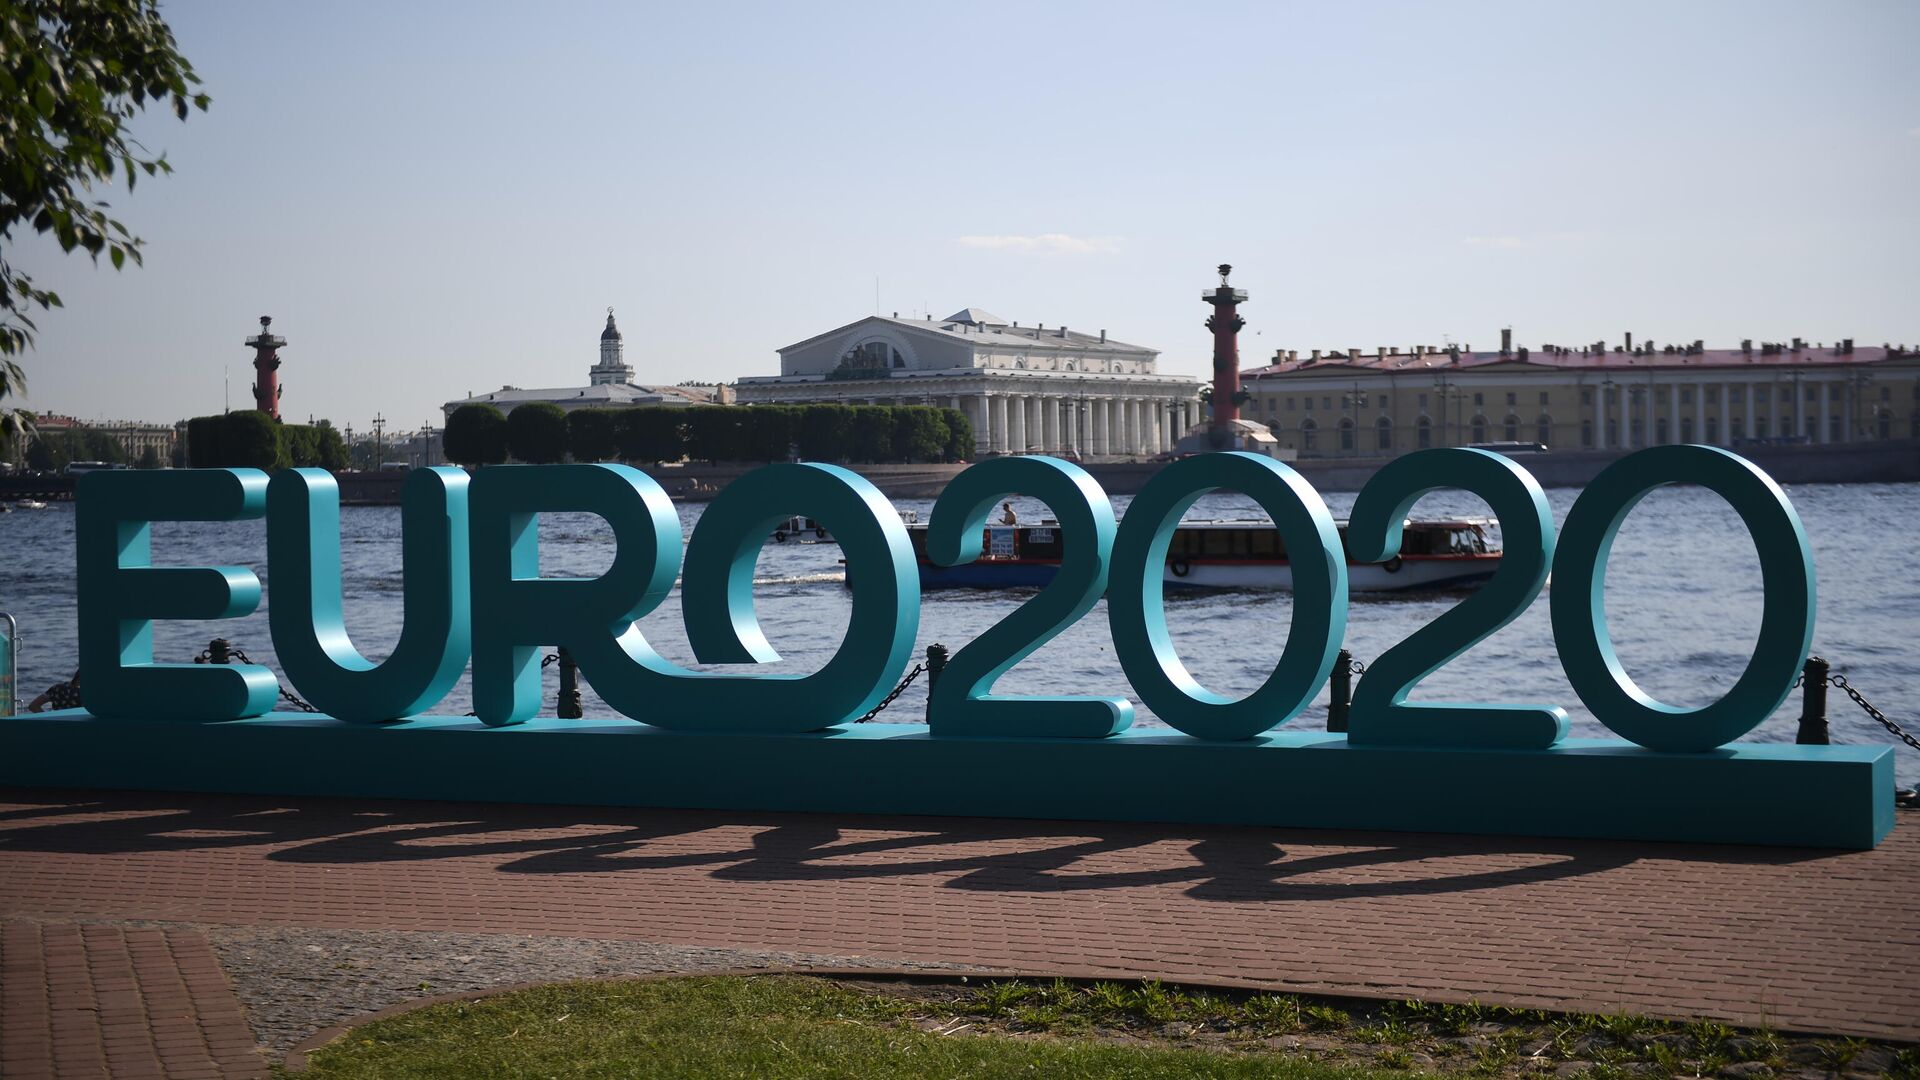 Открытие парка футбола Евро-2020 в Санкт-Петербурге  - РИА Новости, 1920, 02.11.2020